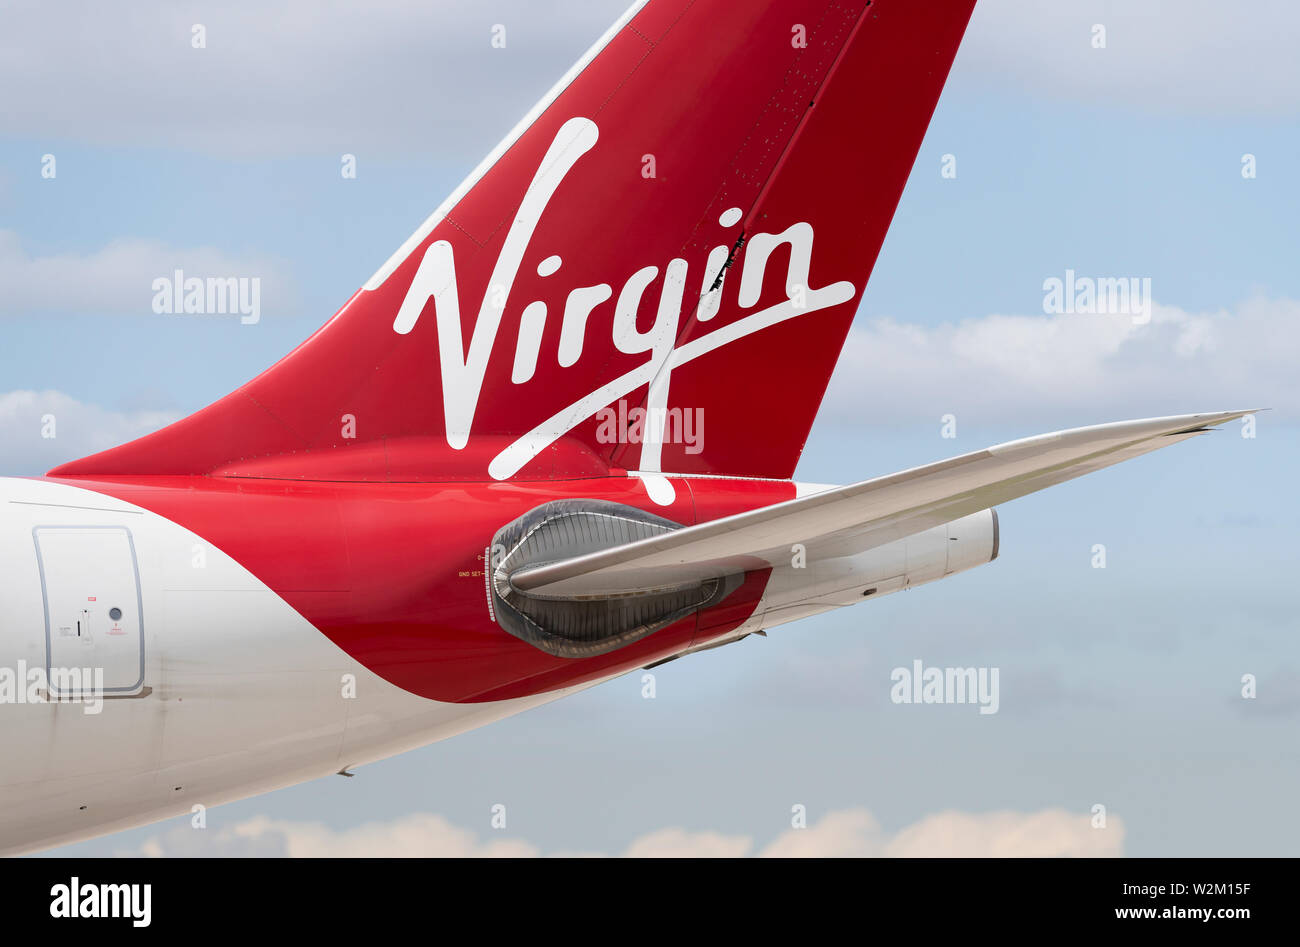 La tailfin d'un avion Virgin Atlantic roulait le long de la piste à l'aéroport de Manchester. Banque D'Images